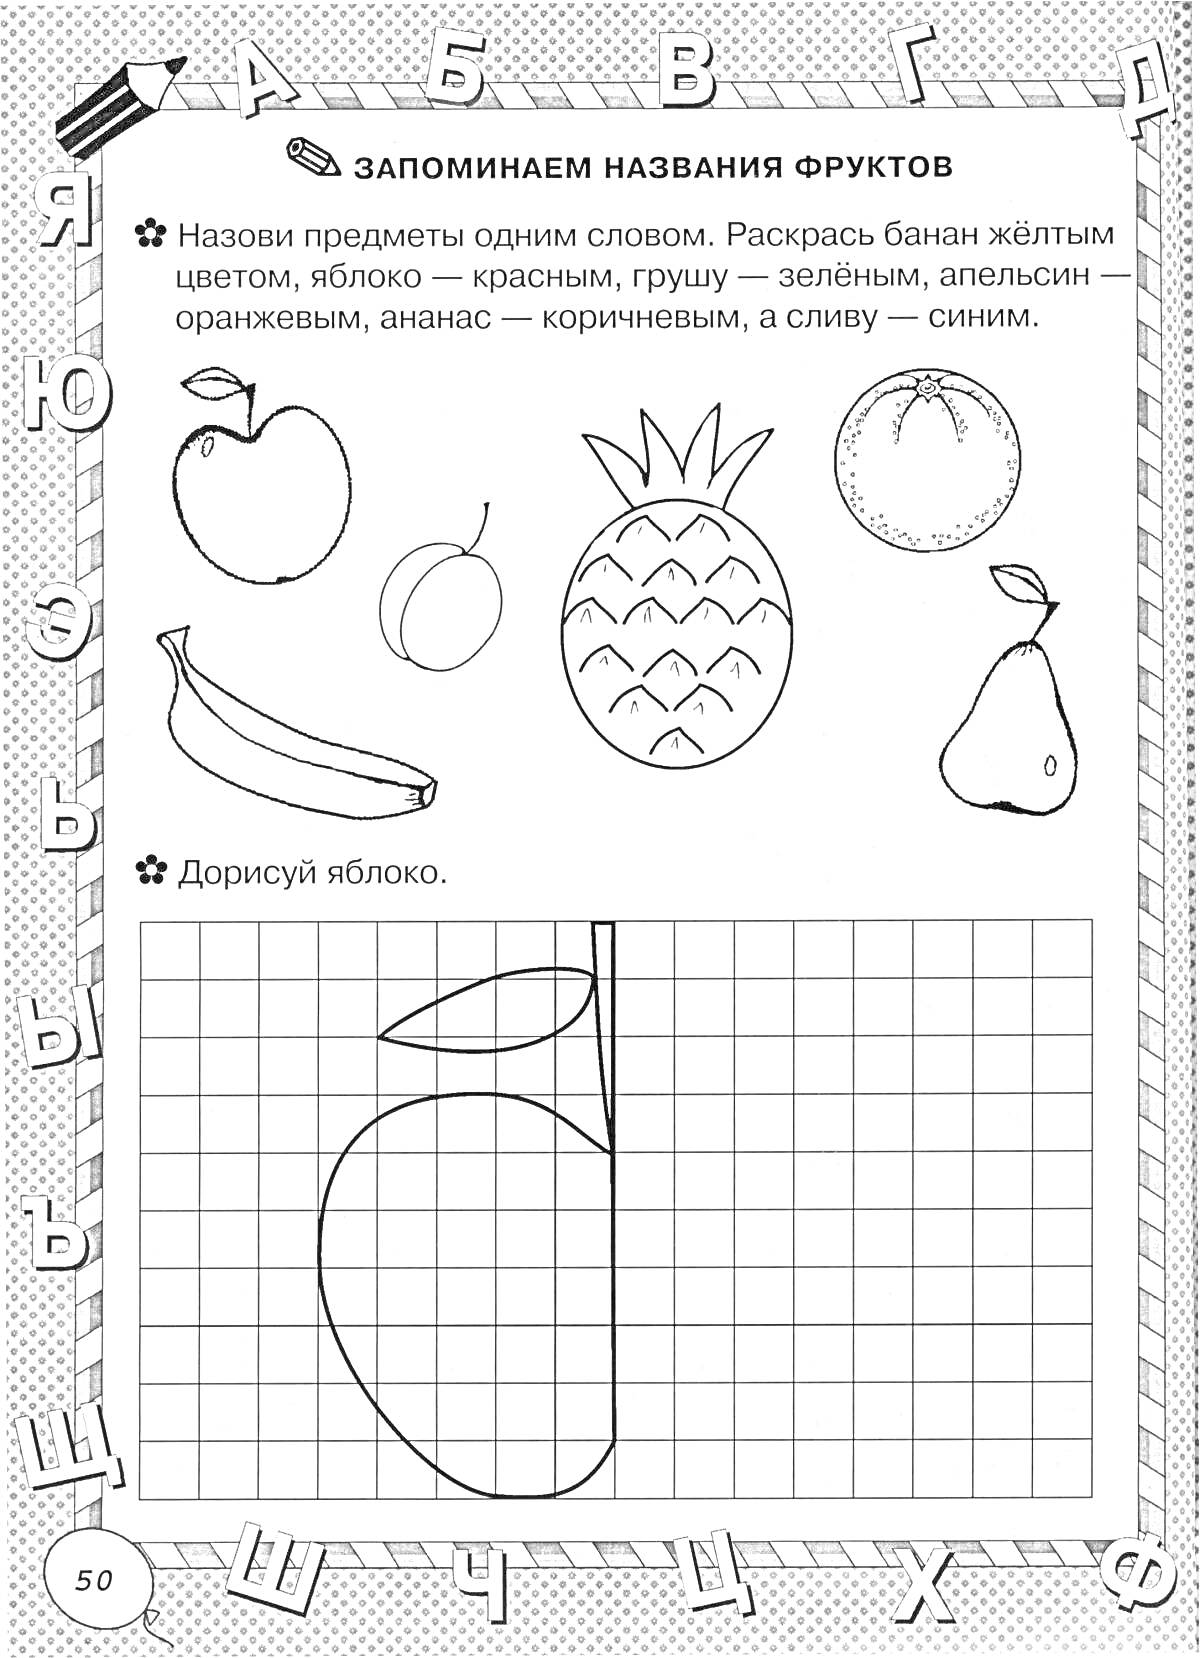 Раскраска Запоминаем название фруктов: вишня, груша, ананас, апельсин, банан. Дорисуй яблоко.